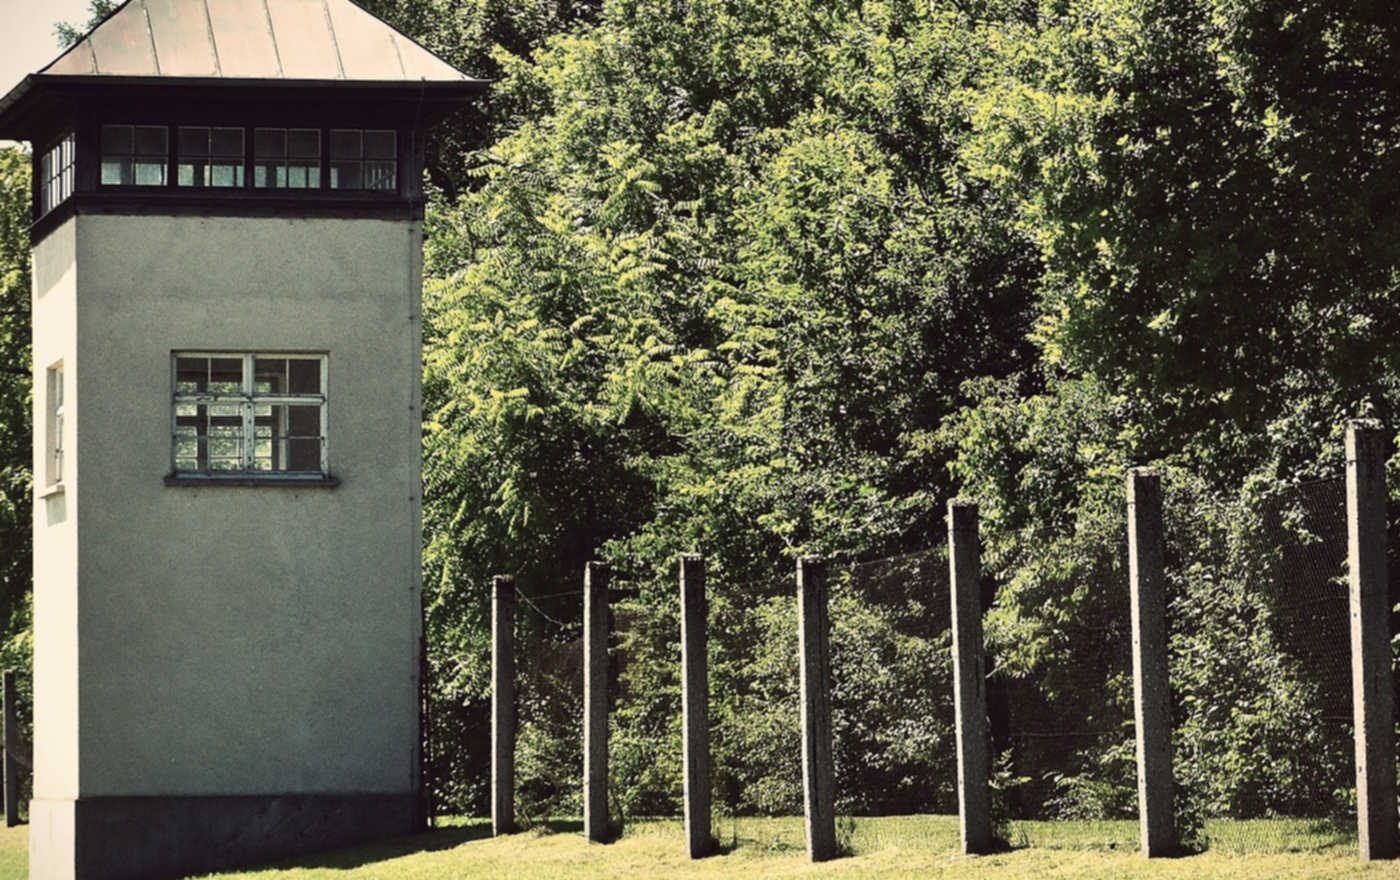 Am 2. April 1938 traf der erste Gefangenentransport aus Österreich im KZ-Dachau ein. Ein ökumenischer Gottesdienst am 8. April, in dem Bischof Michael Bünker predigen wird, gedenkt der Opfer. Foto: pixabay/Alexas_Fotos